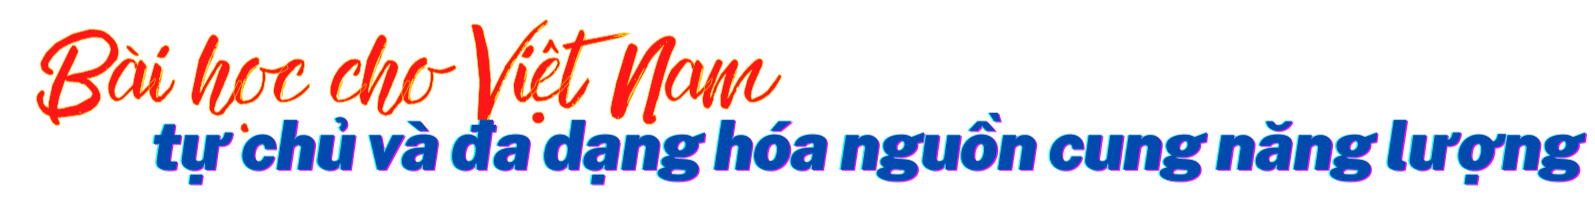 Longform | Bài 4: Các chuyên gia kinh tế khuyến nghị bài học và giải pháp cho Việt Nam!